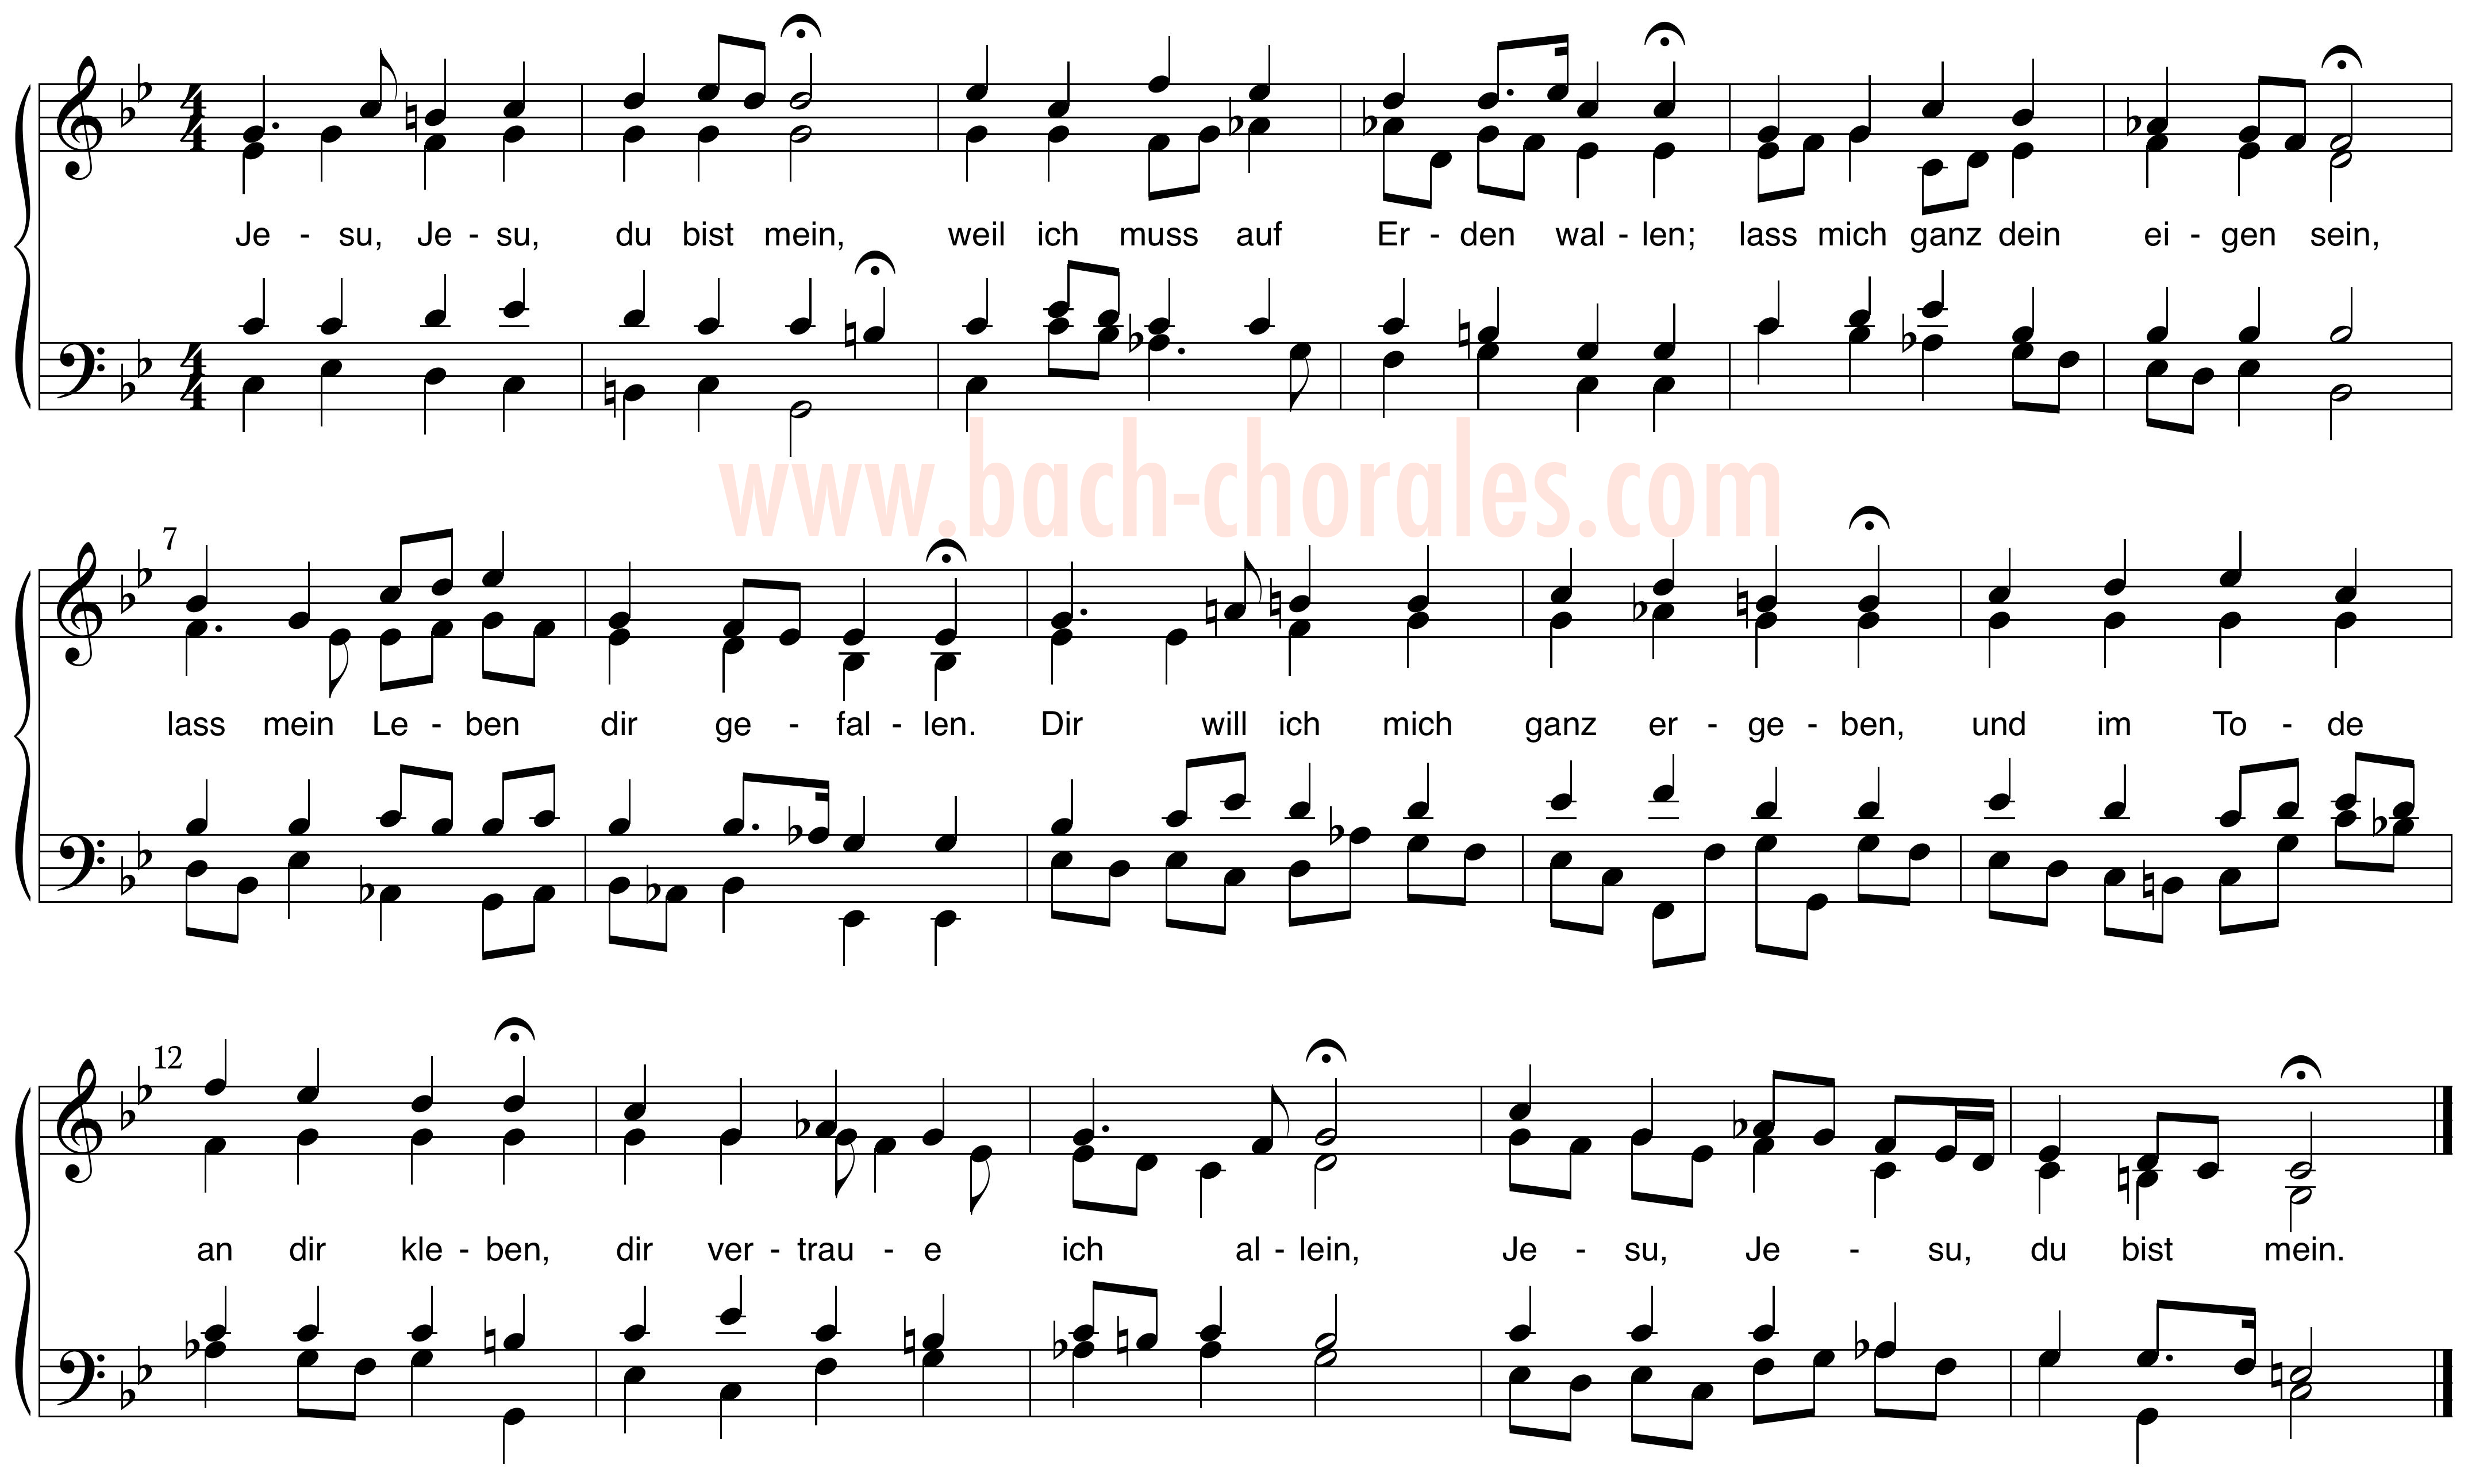 notenbeeld BWV 357 op https://www.bach-chorales.com/